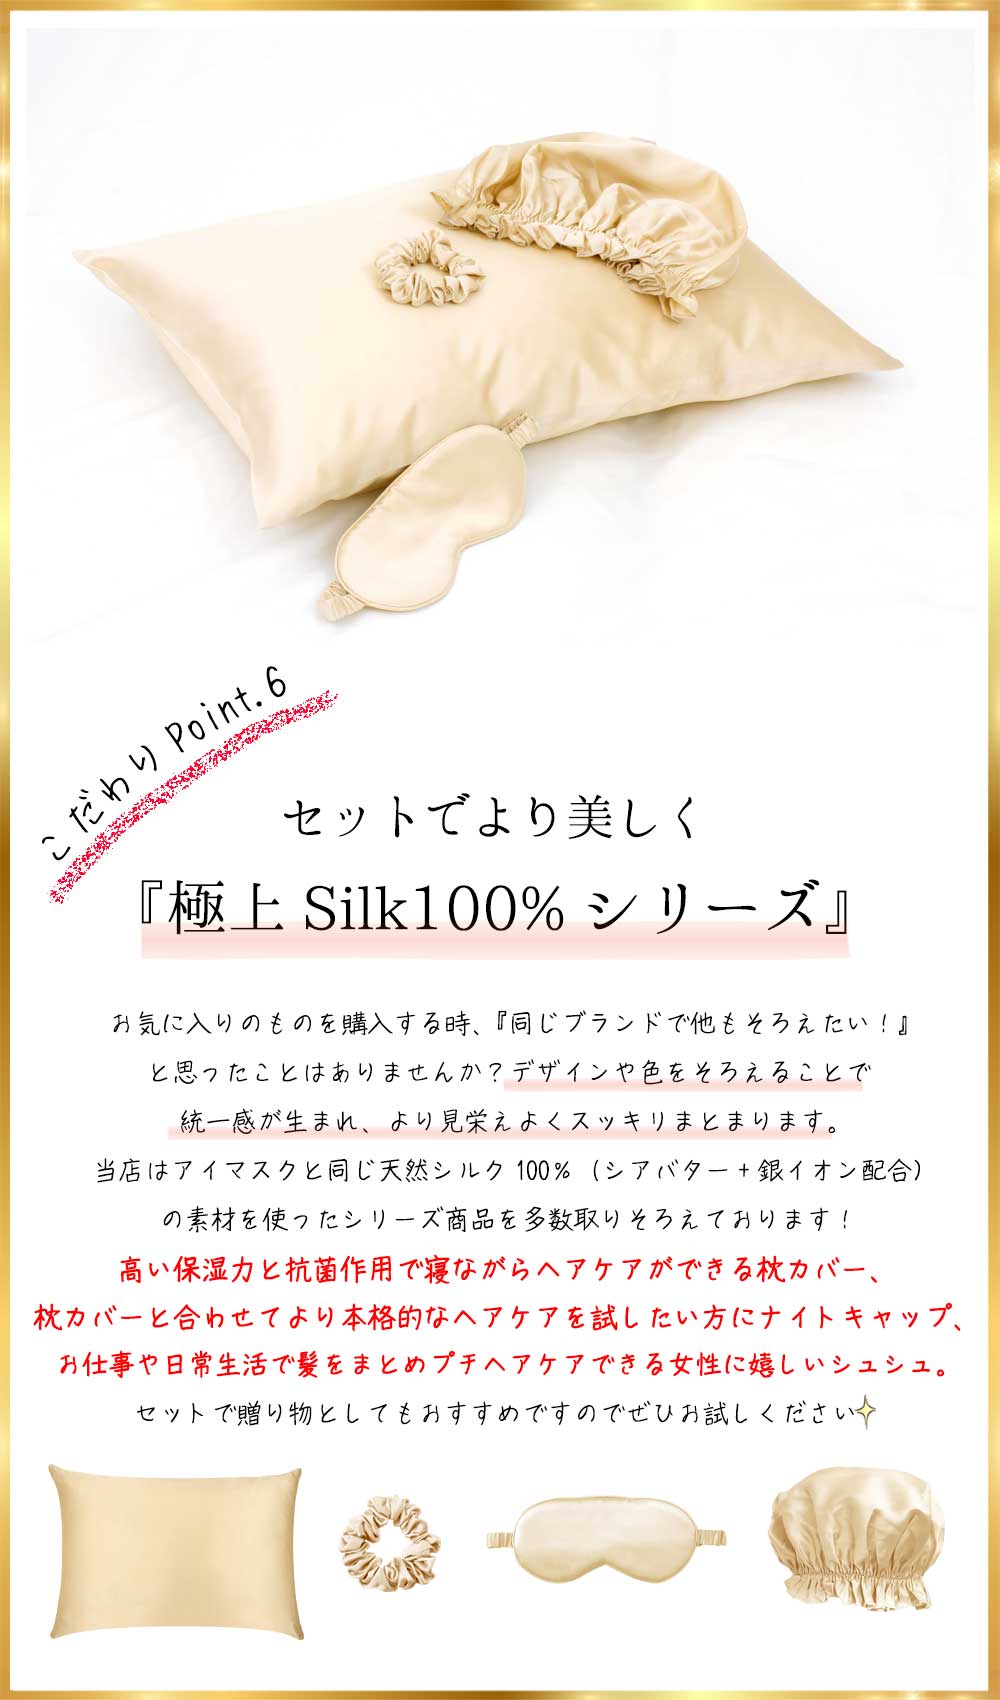 【最安値特価】taihu snow シルク100% 枕カバー、アイマスク シーツ・カバー